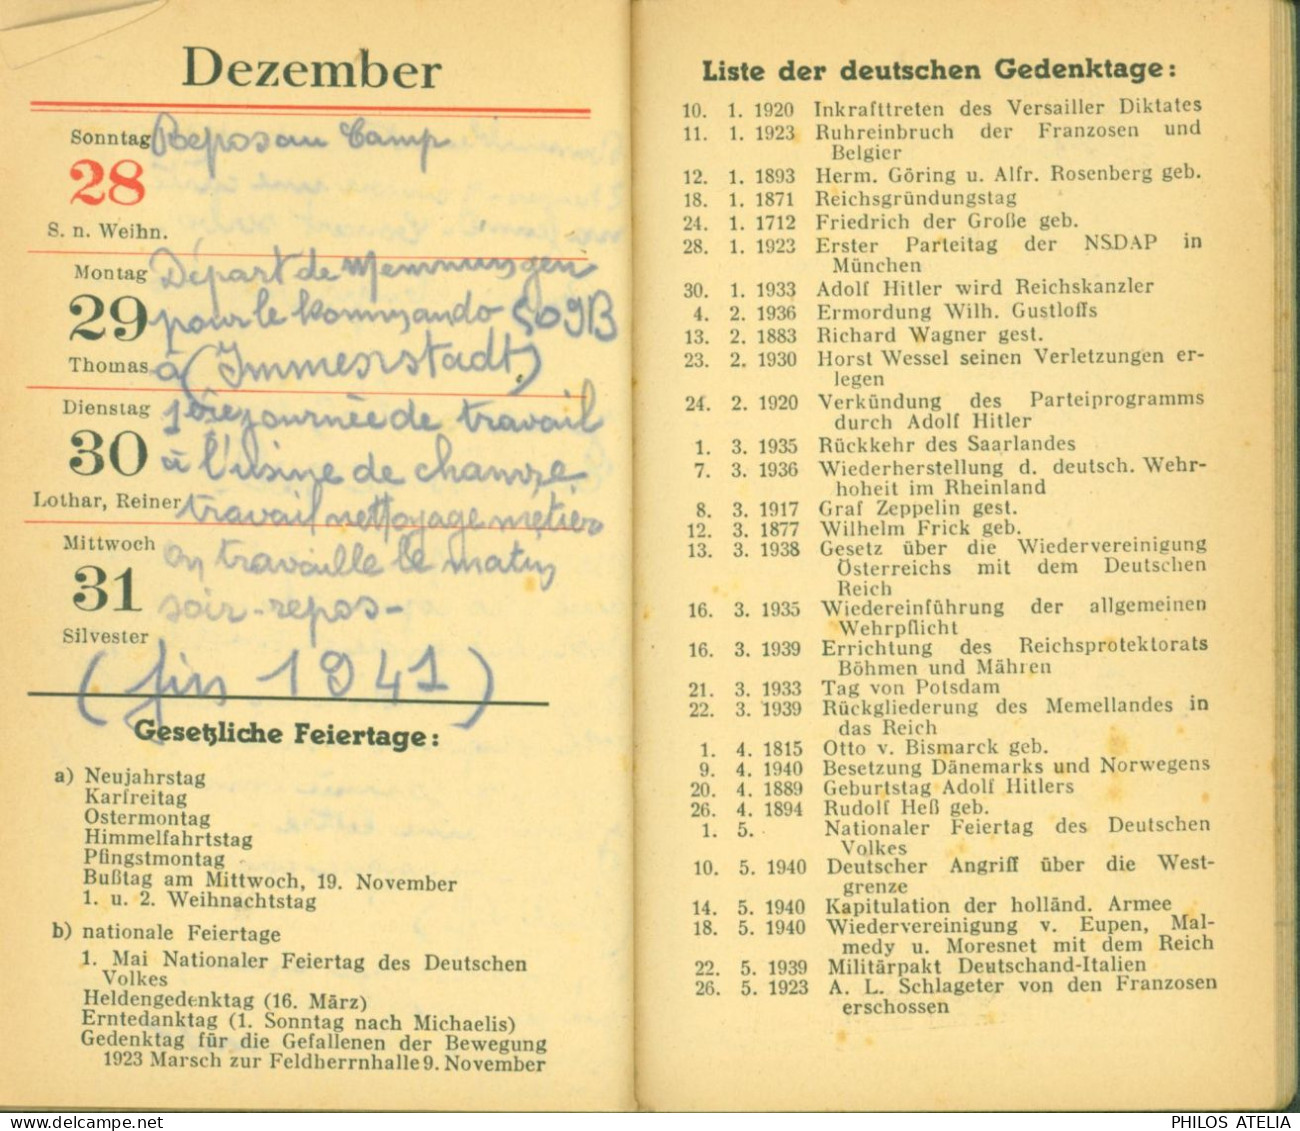 Guerre 40 Almanach Notiz Kalender 1941 Louis Serra De Port Vendres Prisonnier Stalag VIIB Memmingen Pro Pétain - Calendars